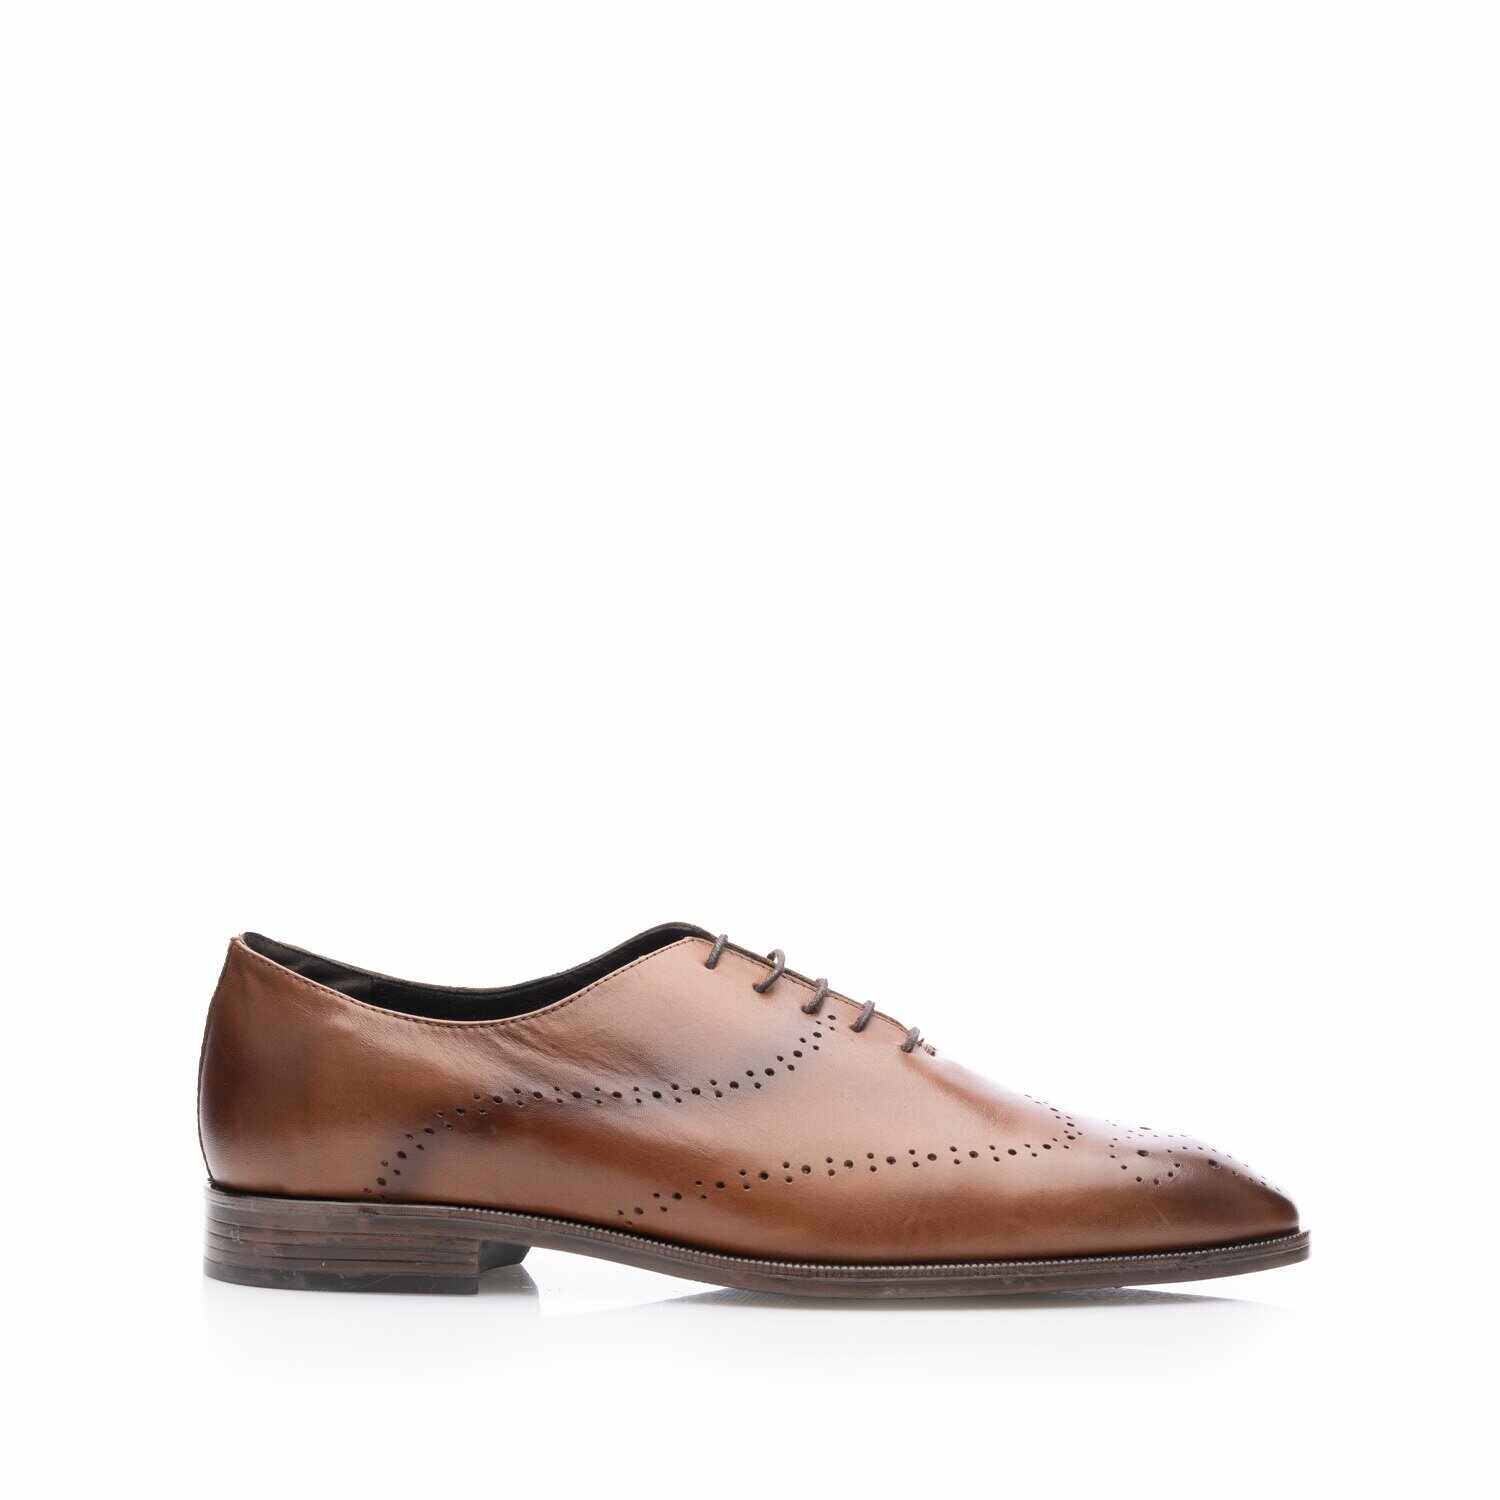 Pantofi eleganţi bărbaţi din piele naturală, Leofex - 986 Cognac Box